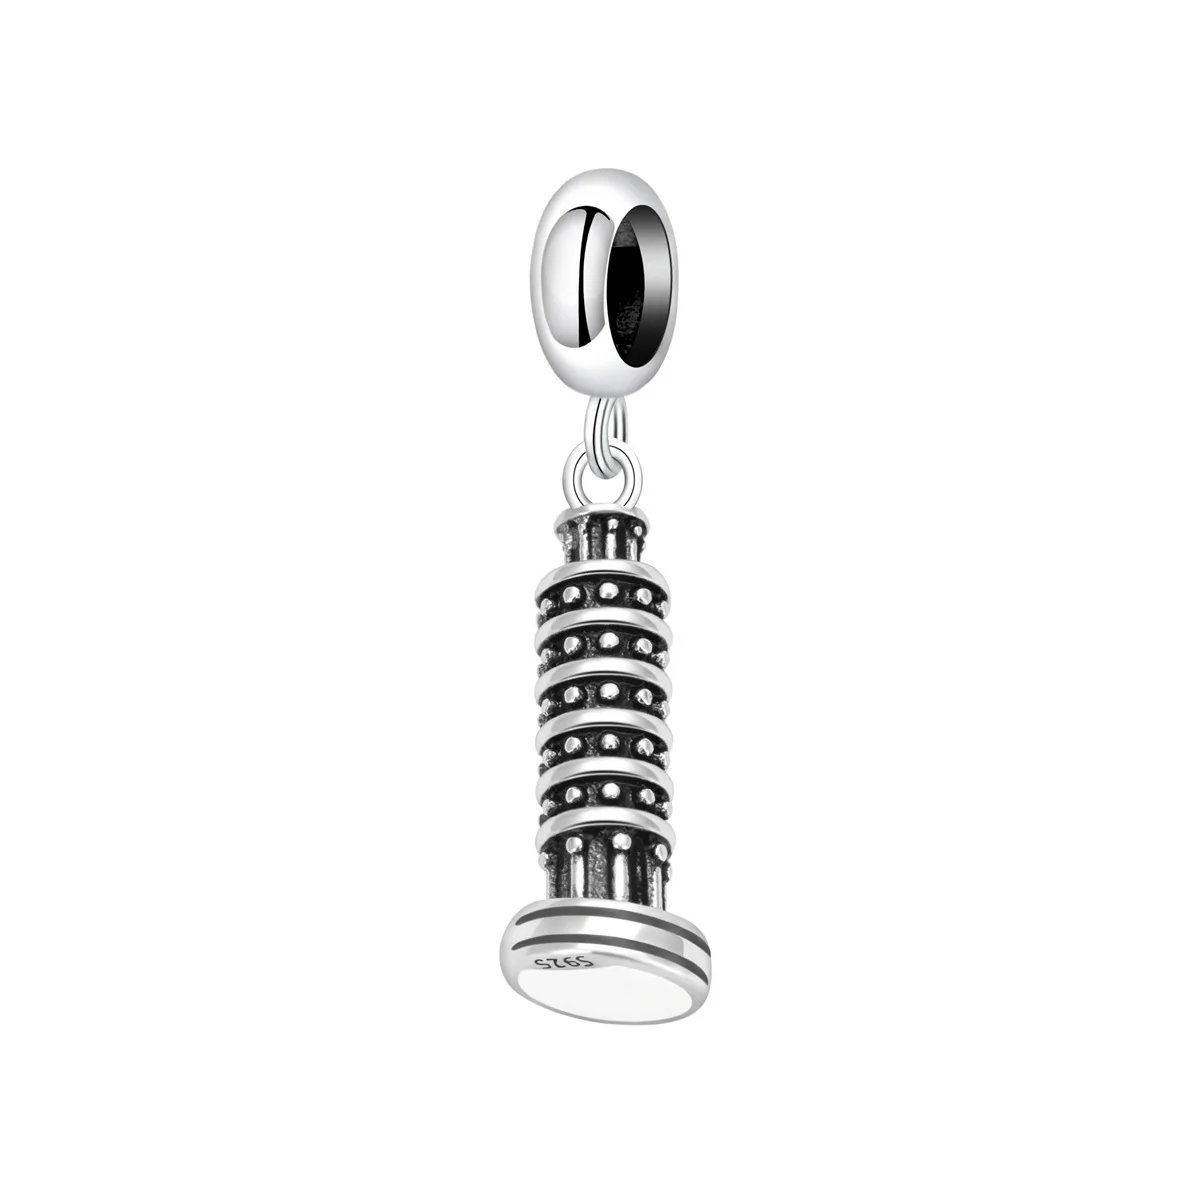 Европейский шарм из стерлингового серебра S925 пробы в стиле ретро с высокой башней, сделанный своими руками Для оригинальных женских браслетов, ожерелий, цепочек, ювелирных изделий